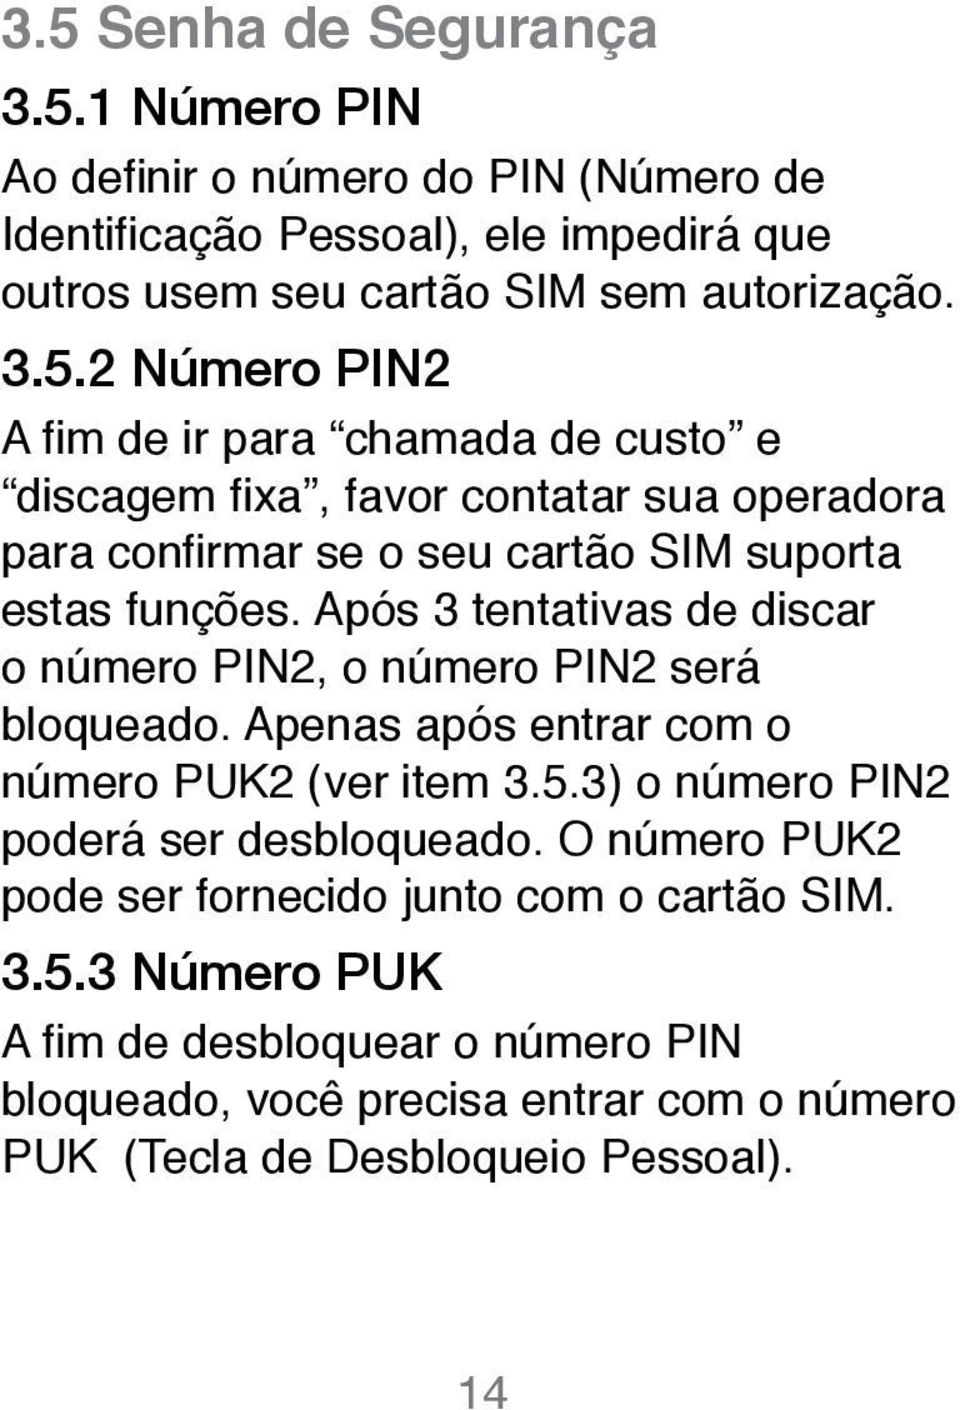 O número PUK2 pode ser fornecido junto com o cartão SIM. 3.5.